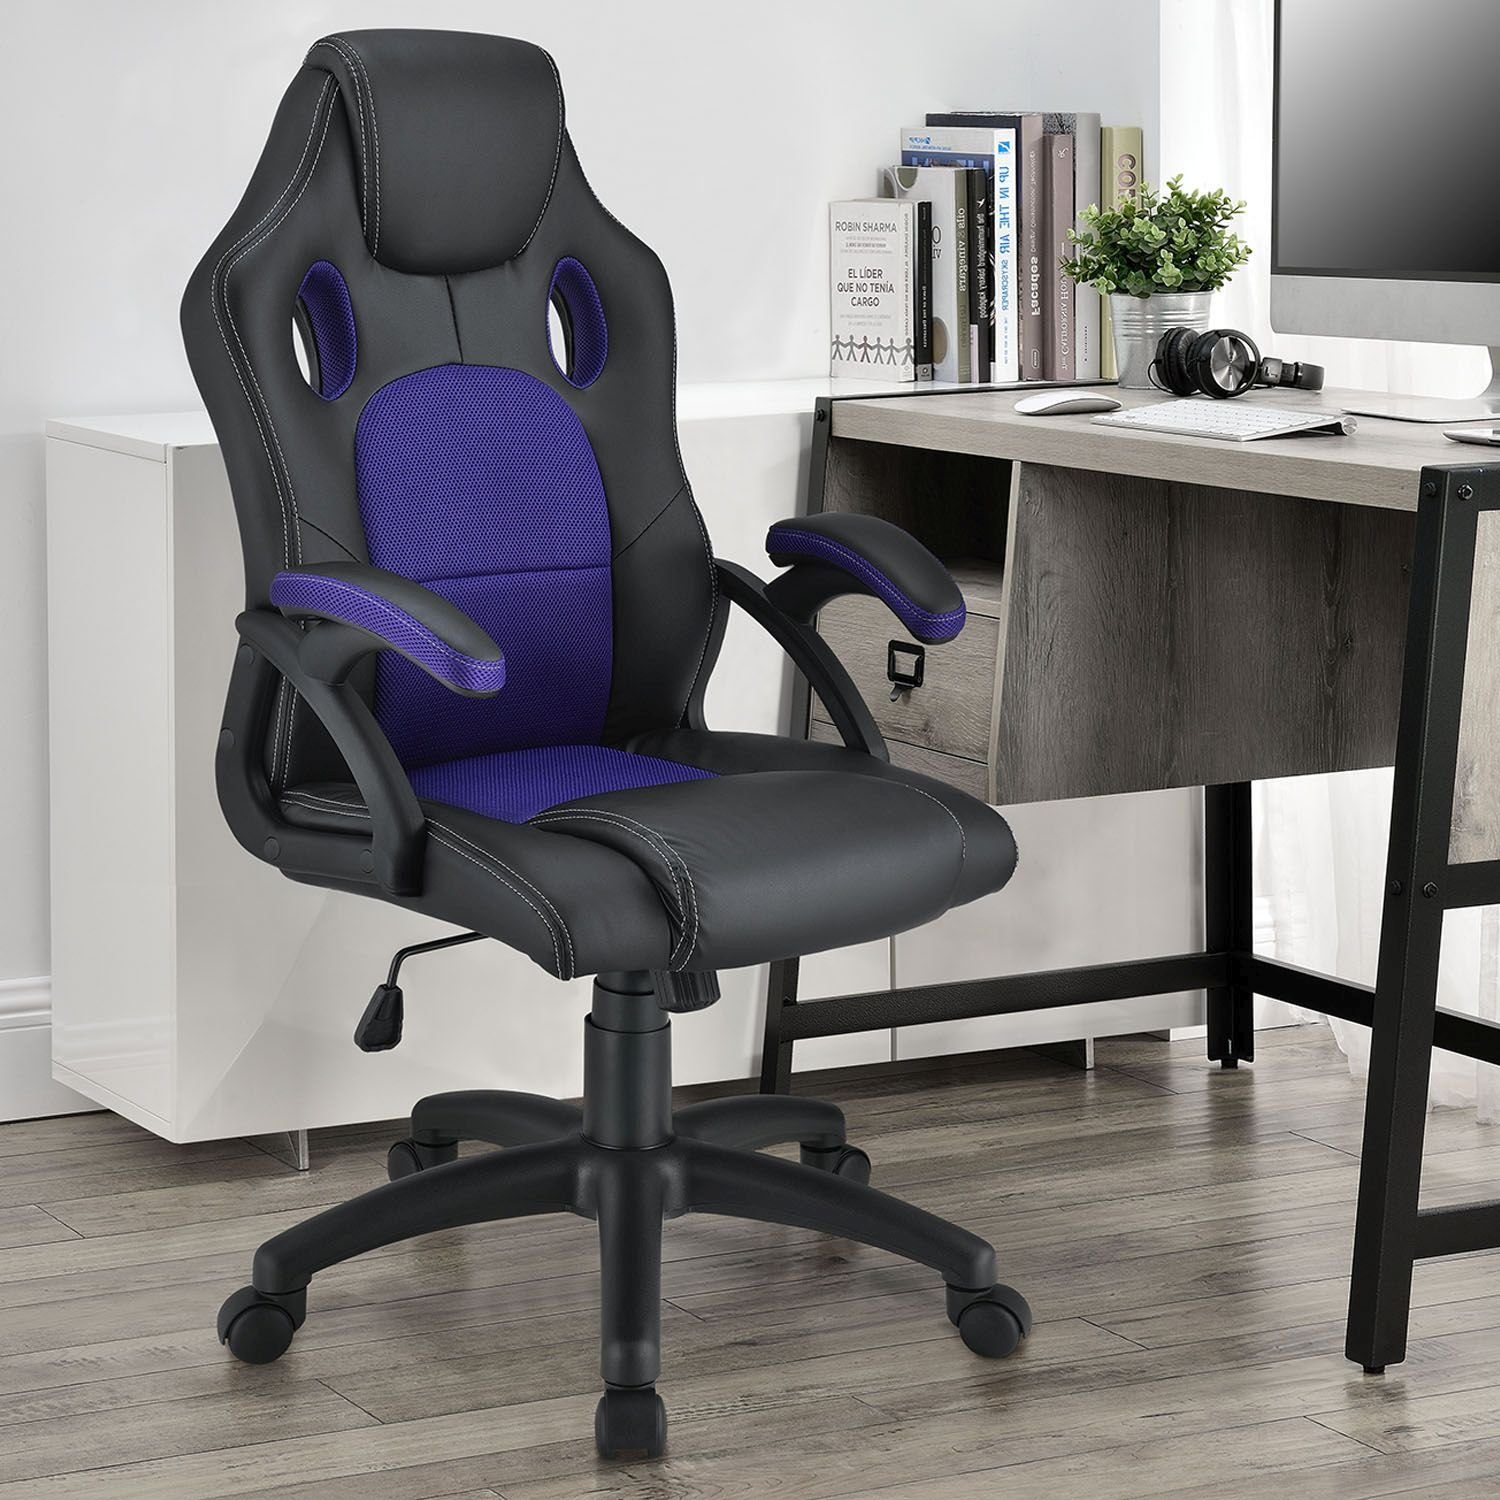 Juskys Gaming-Stuhl Montreal, Violett und Ergonomisch Schwarz, kippbar Sitzfläche, Rückenlehne Sitzfläche geformte